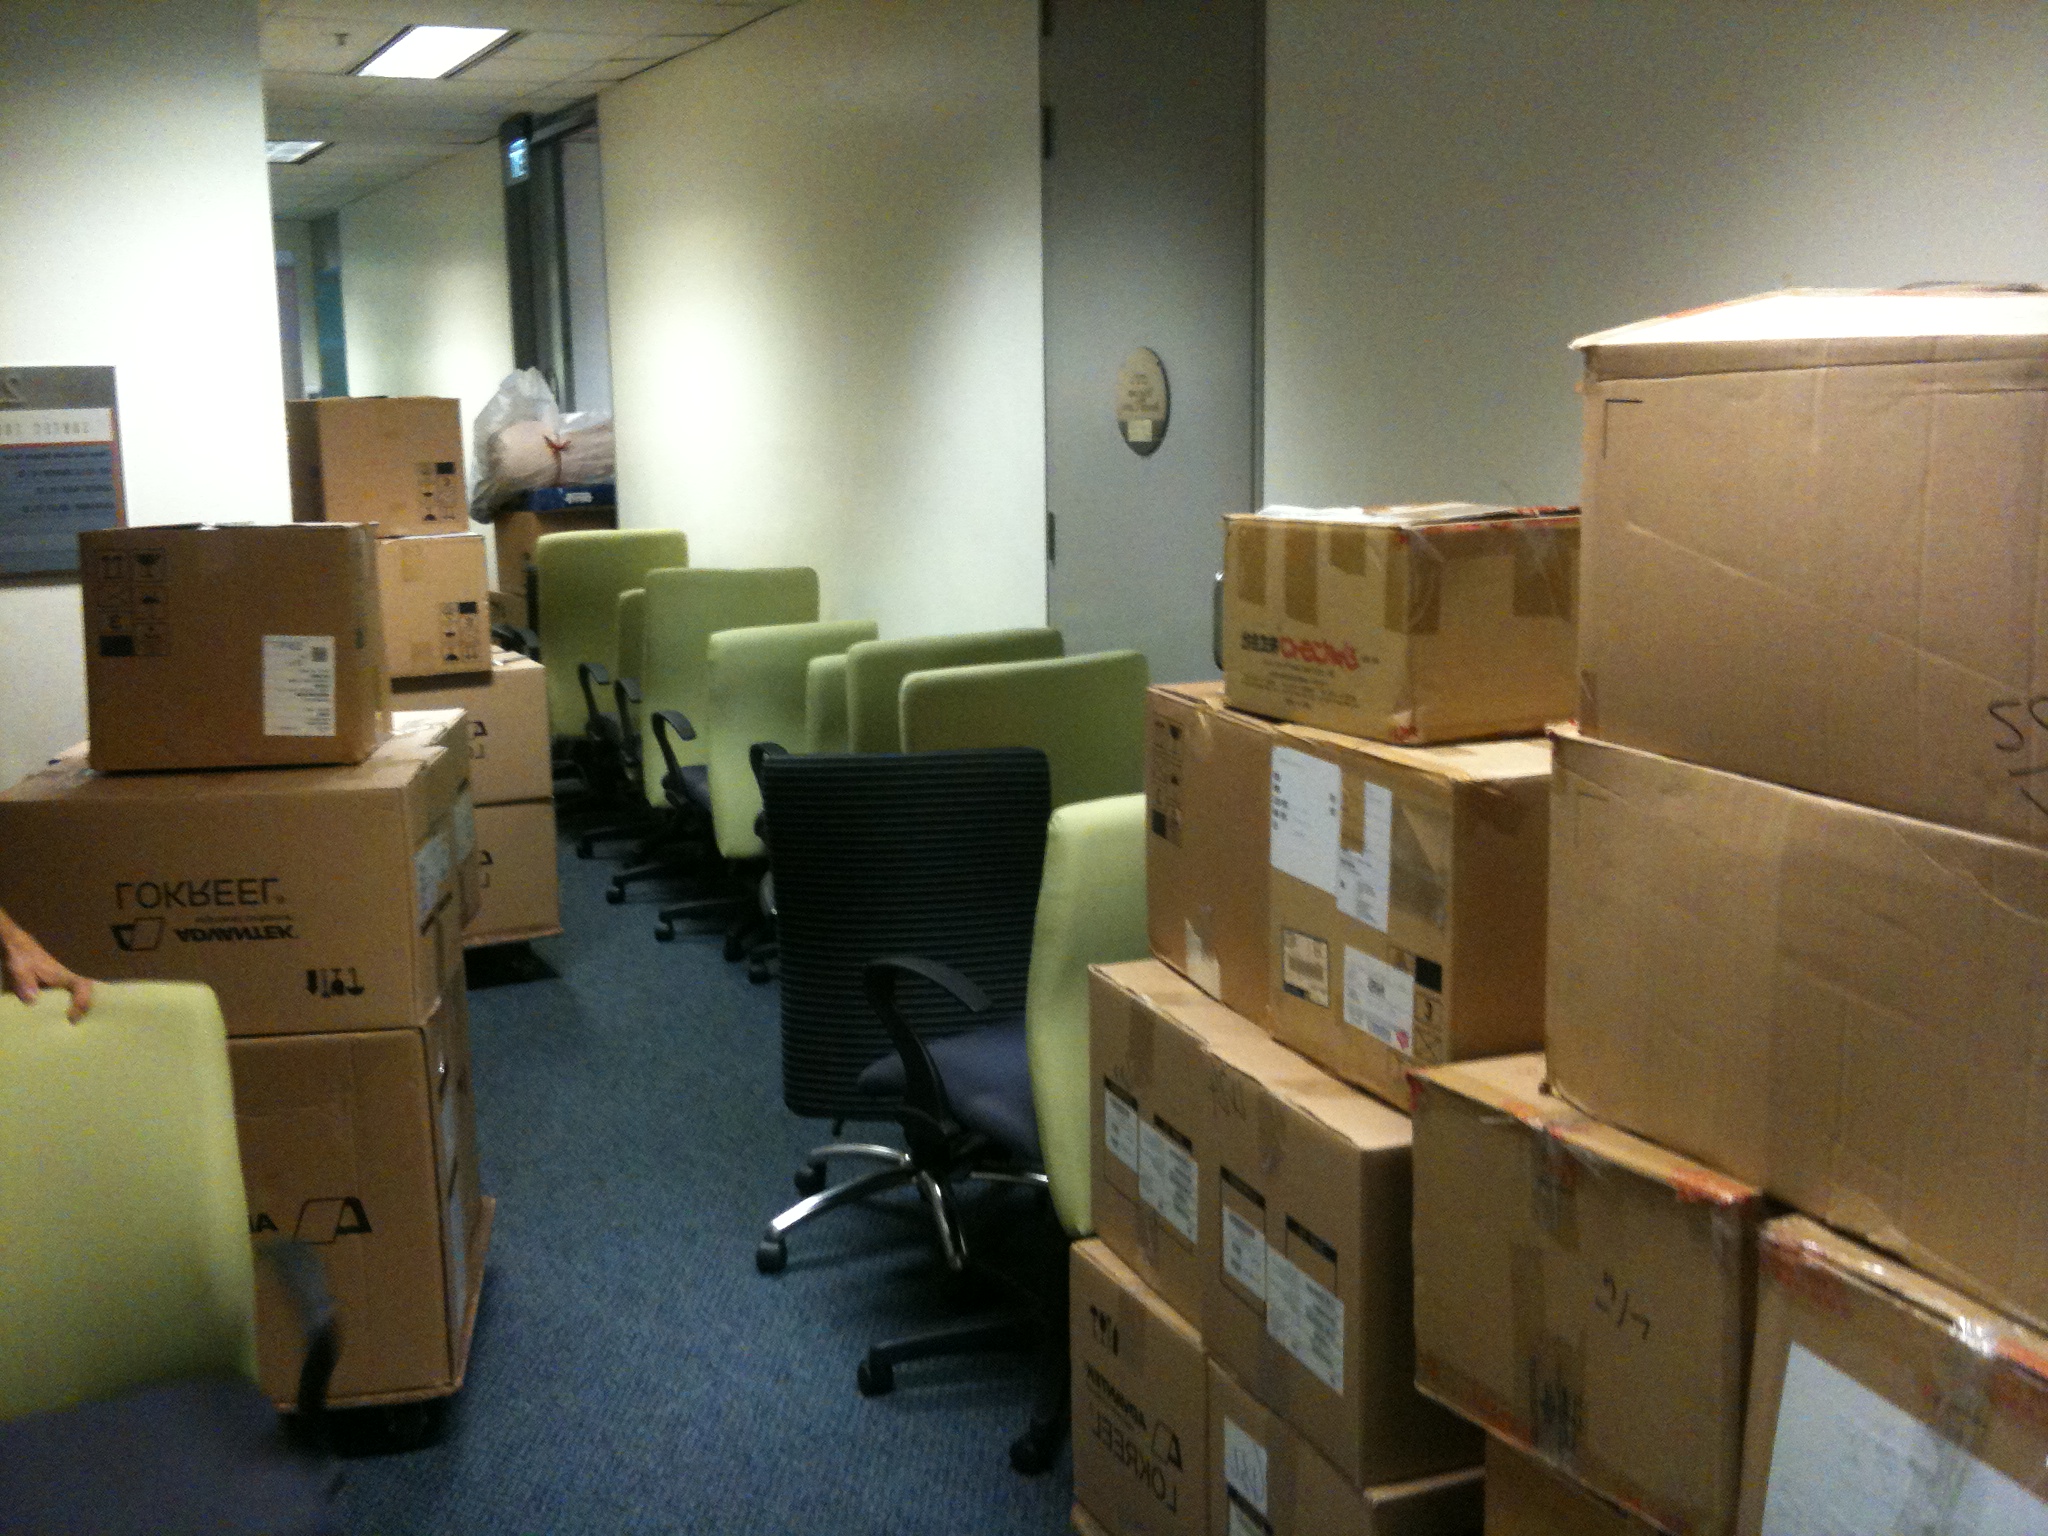 Дешево переехать. Коробки в офисе. Офис с коробками. Переезд офиса. Упакованные вещи в офисе.